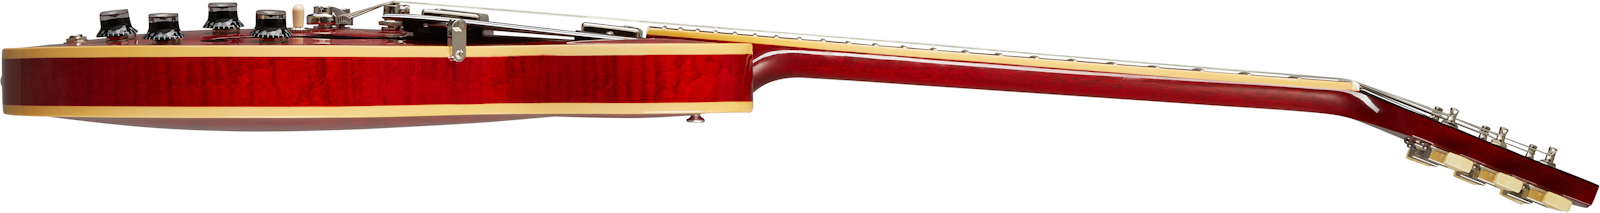 Gibson Es-335 Figured Lh Original Gaucher 2h Ht Rw - Sixties Cherry - Guitarra electrica para zurdos - Variation 3